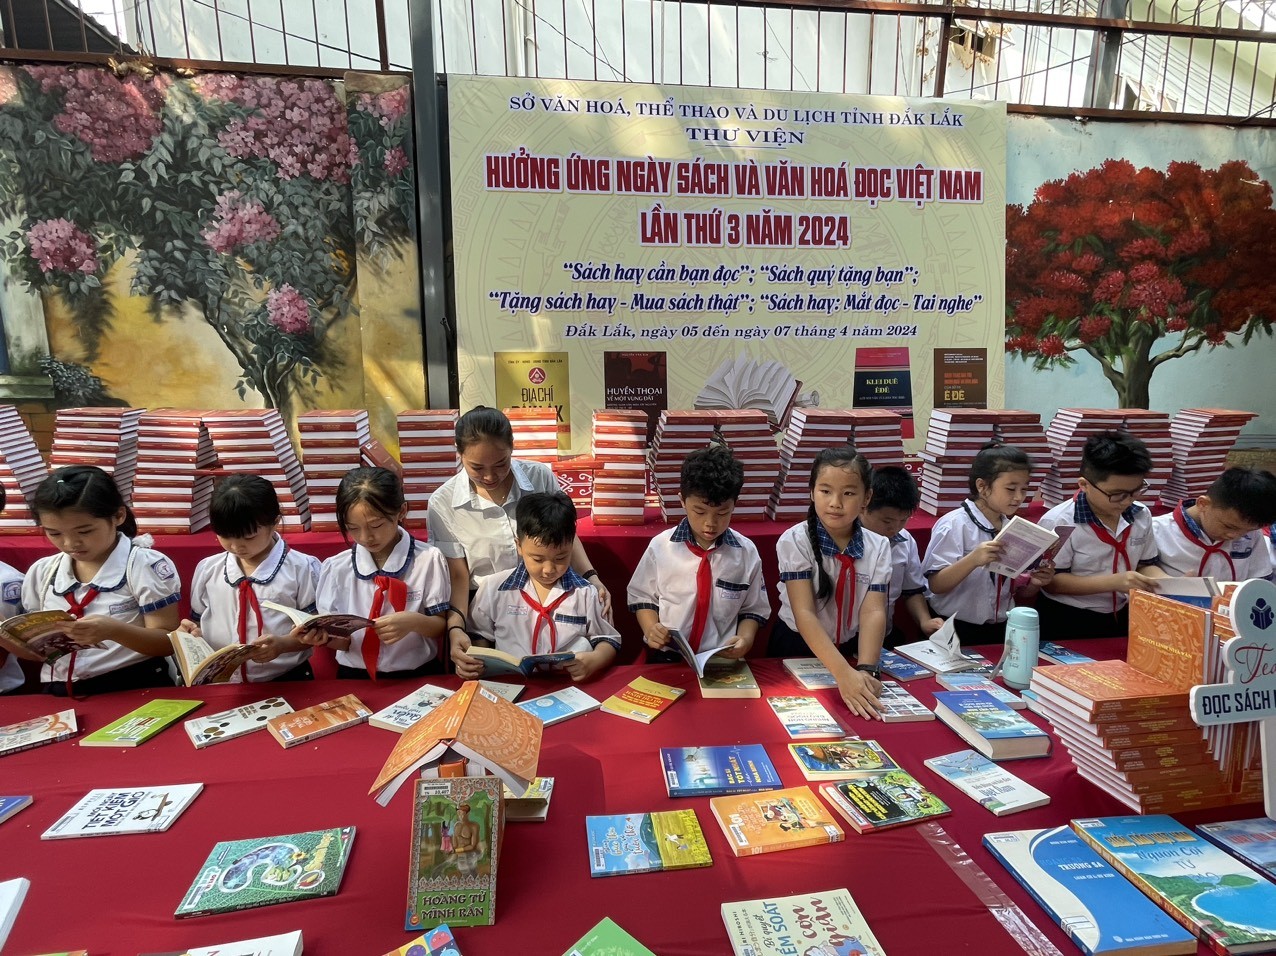 ác cháu học sinh đọc sách tại Ngày Sách và Văn hóa đọc Việt Nam lần thứ 3 năm 2024 trên địa bàn tỉnh Đắk Lắk.